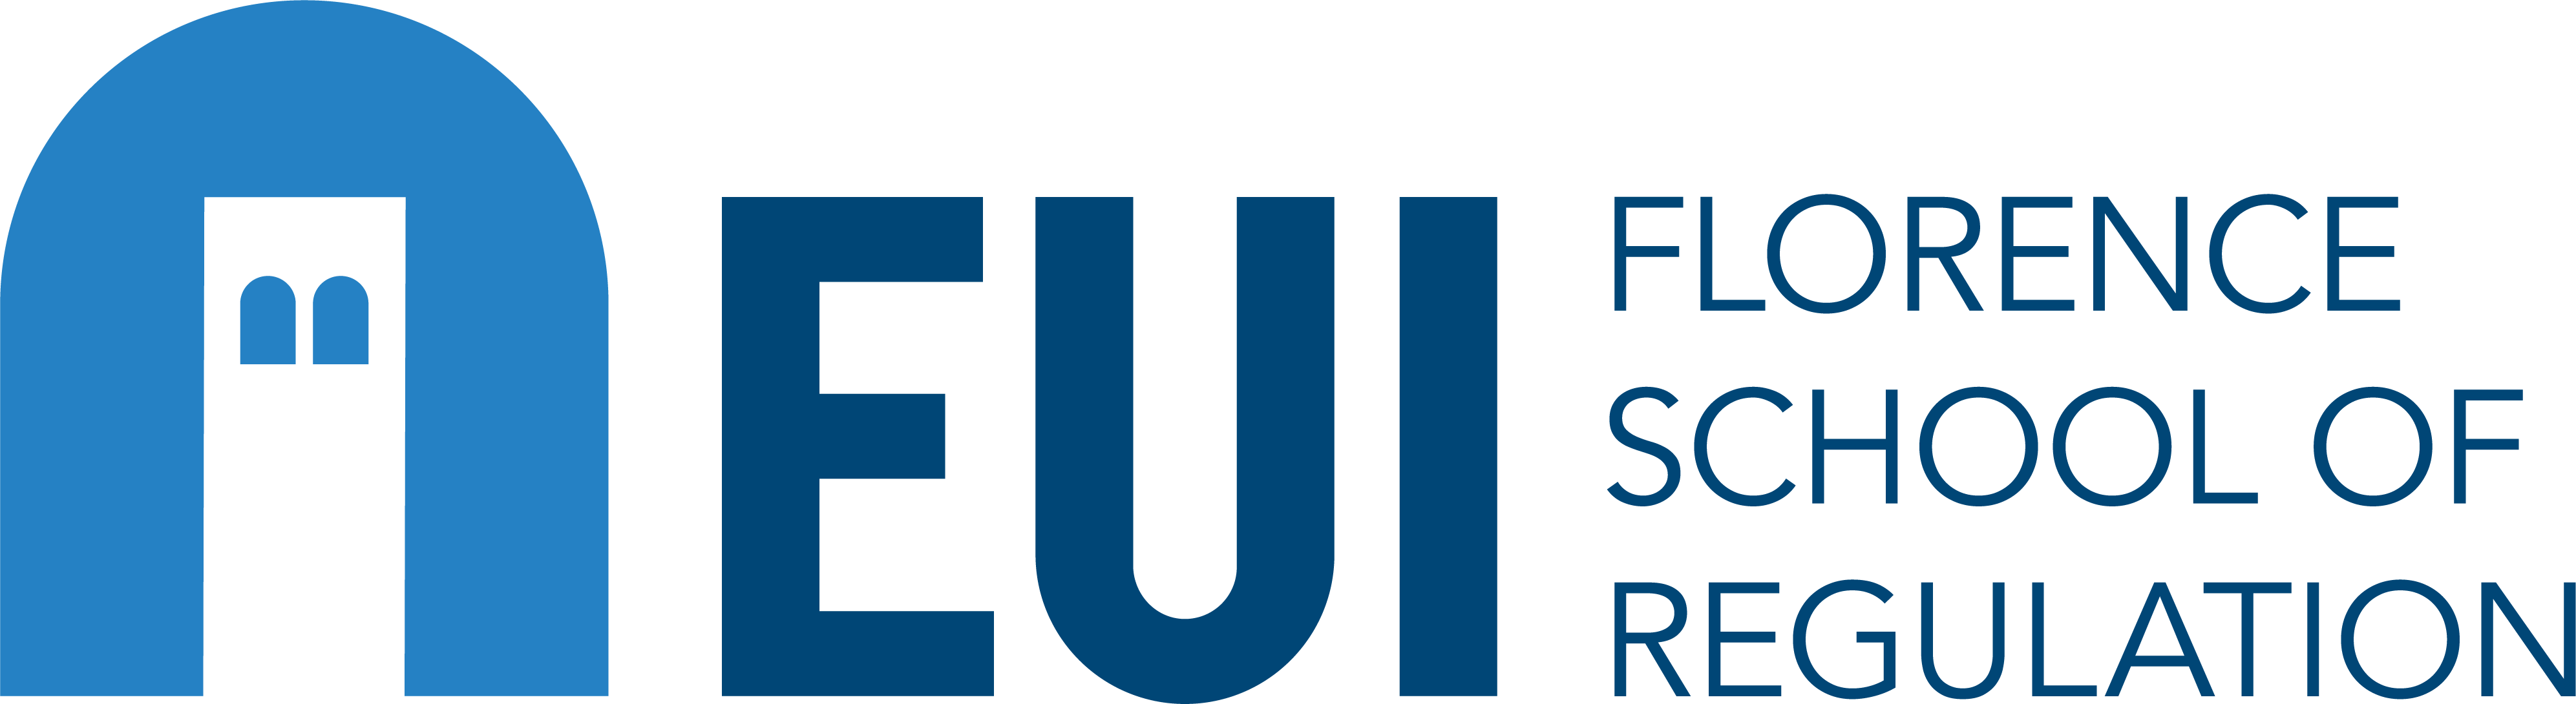 FSR_logo